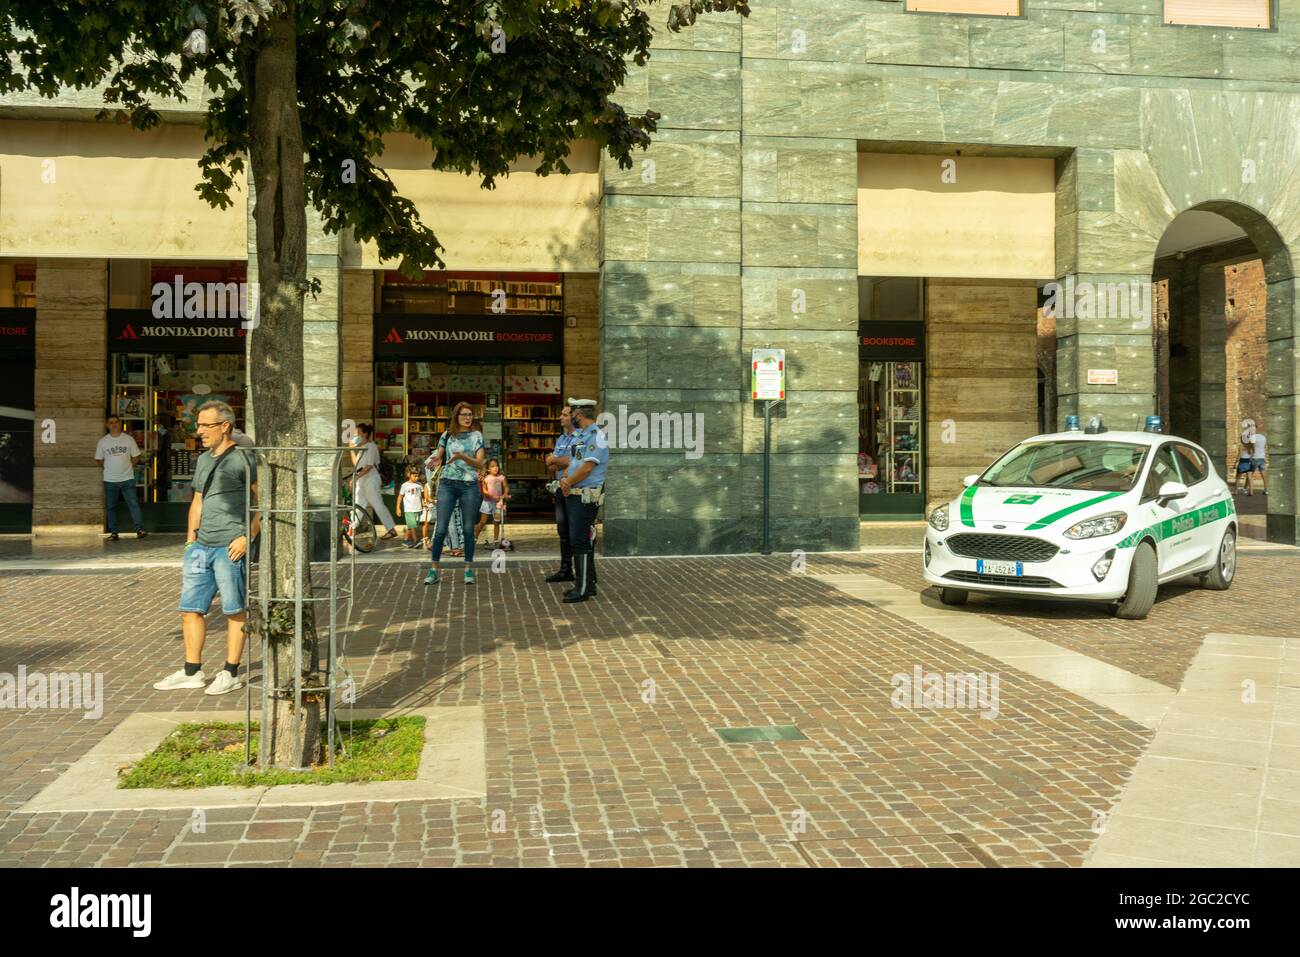 CREMON, ITALIE - 24 juillet 2021 : une voiture de police garée sur une place où des personnes protestent contre la vaccination Covid-19 à Cremona, en Italie Banque D'Images